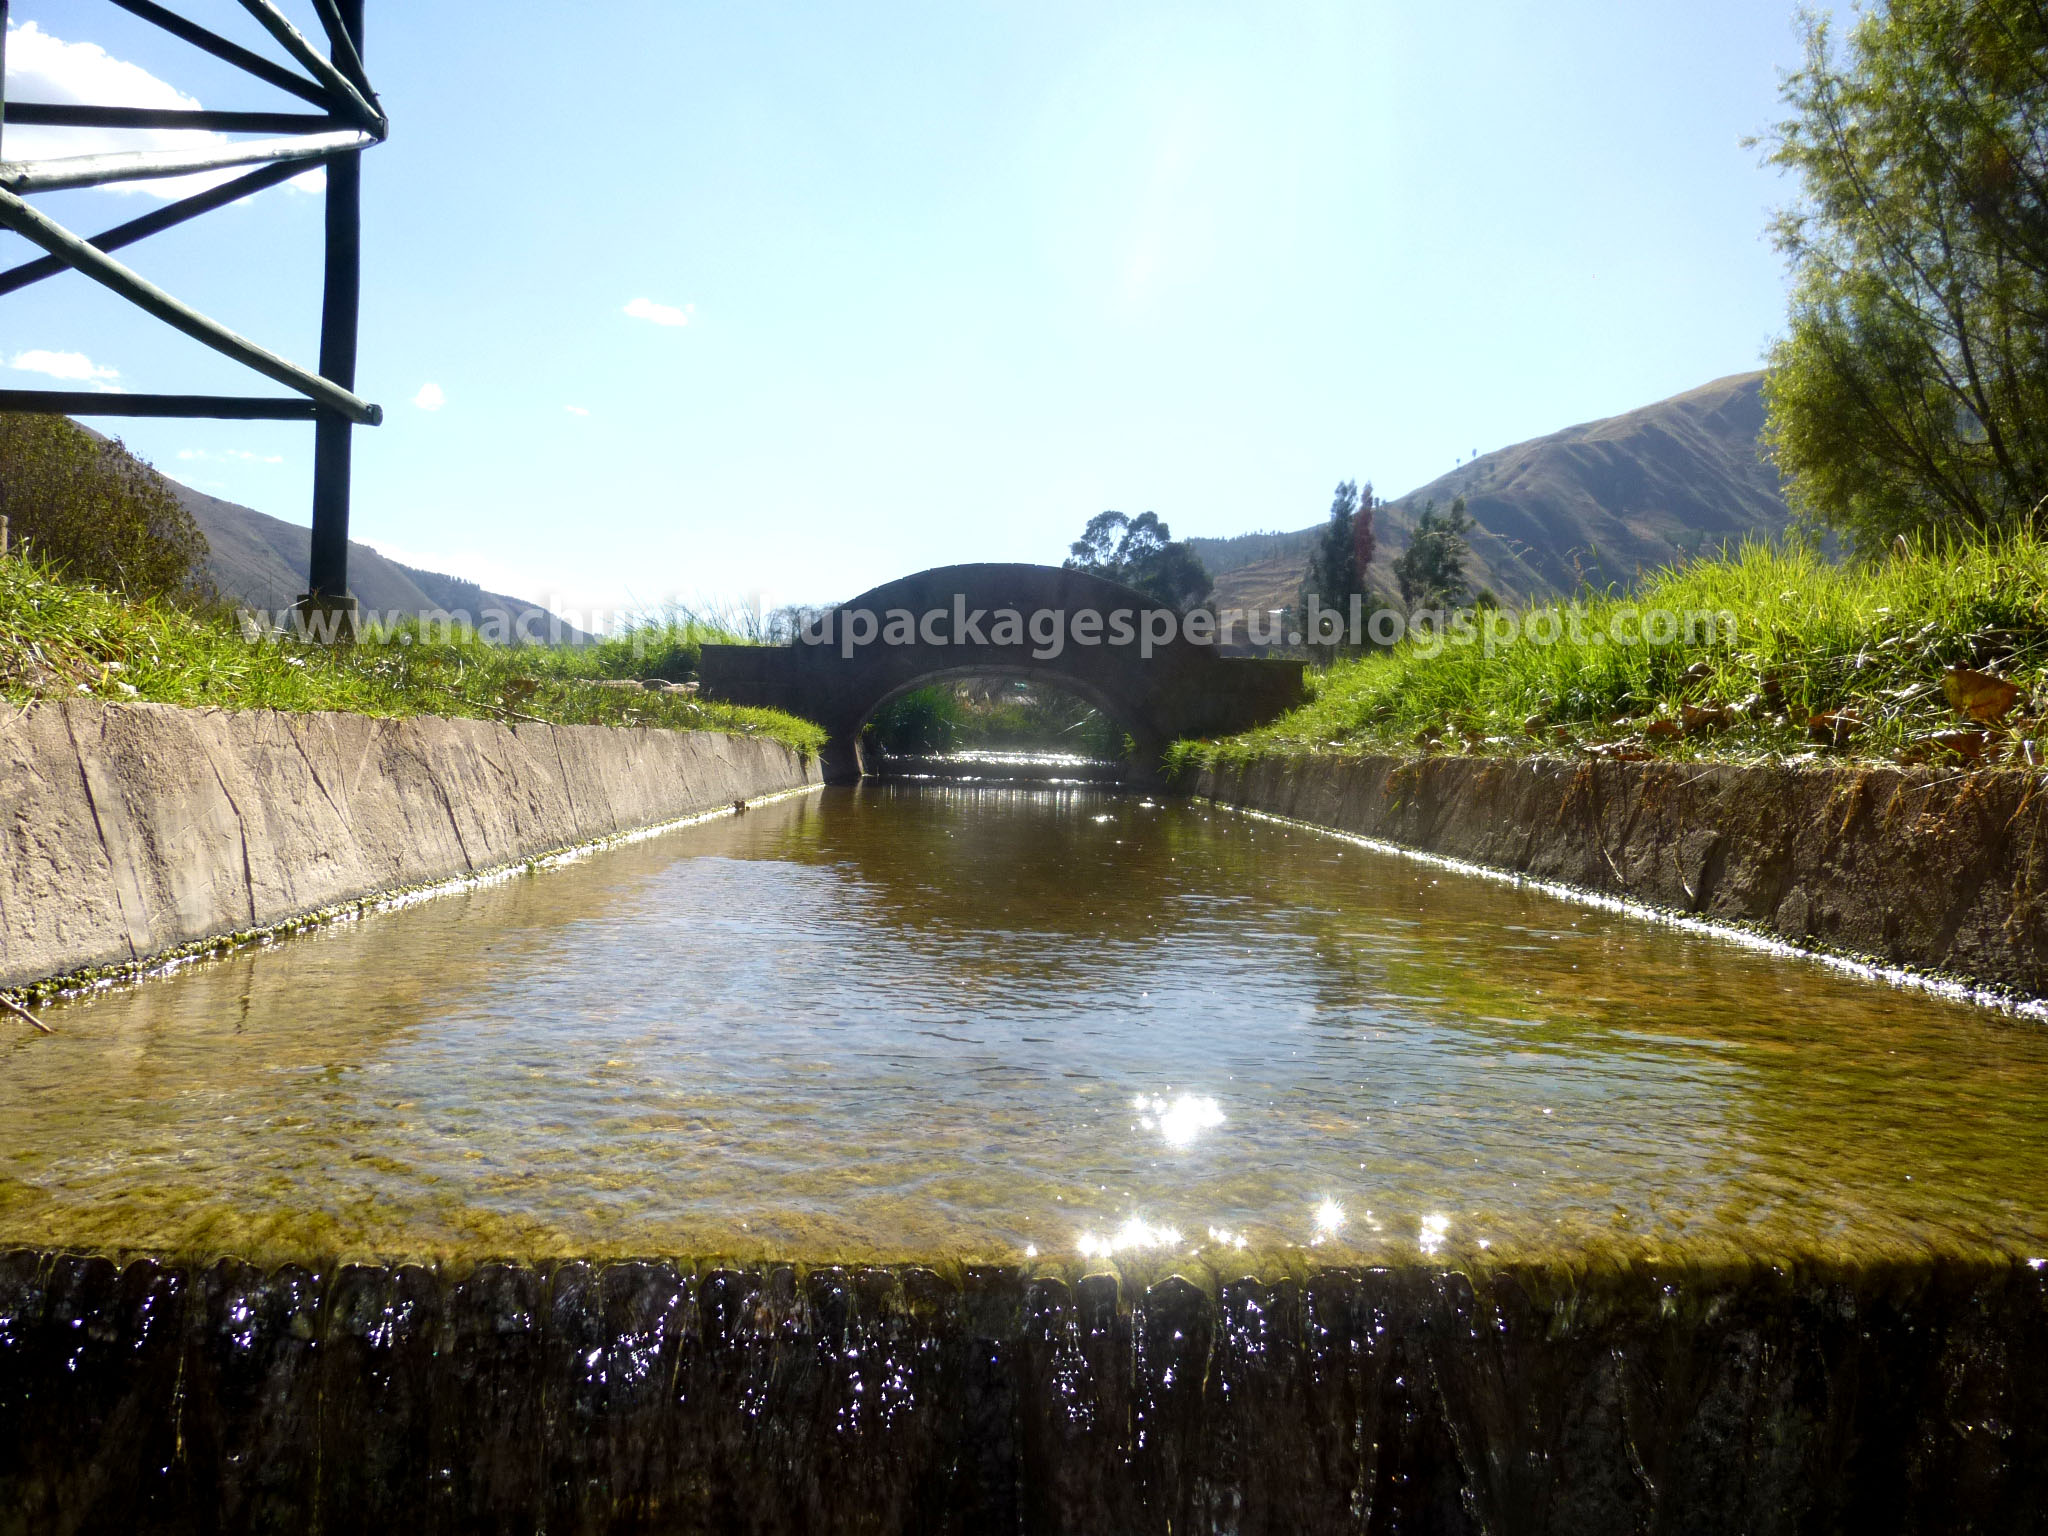 Humedal de Huasao Cusco - Machupicchu Packages